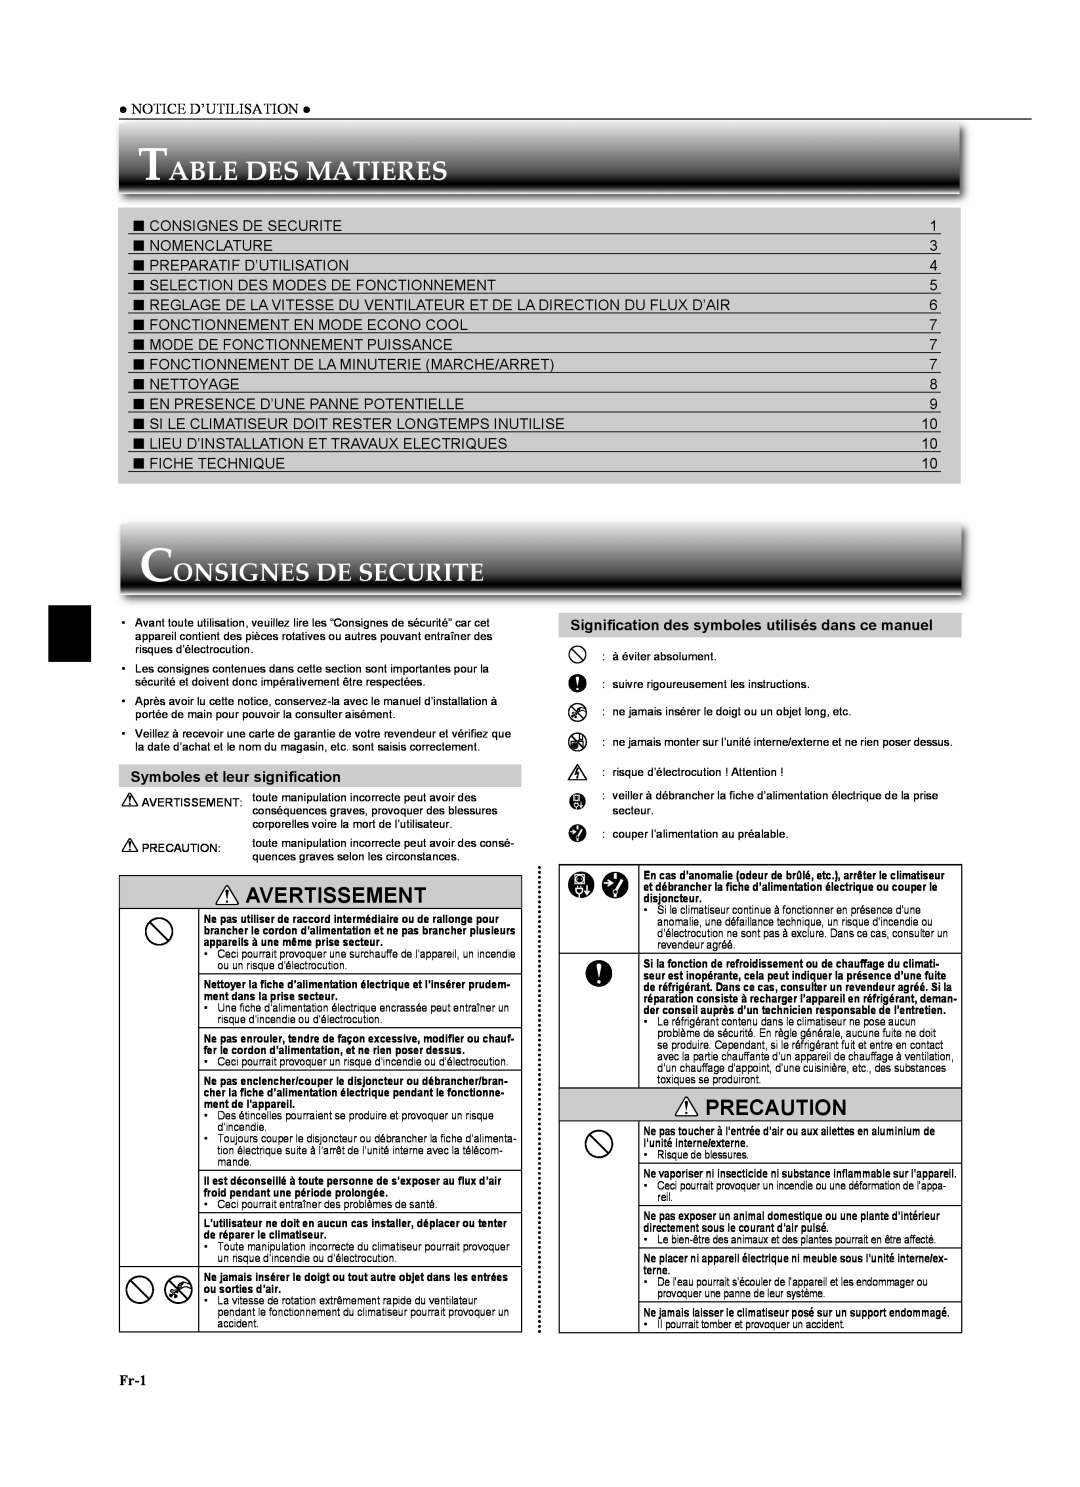 Mitsubishi Electronics MSZ-GA24NA Table Des Matieres, Consignes De Securite, Avertissement, Precaution, Fr-1 